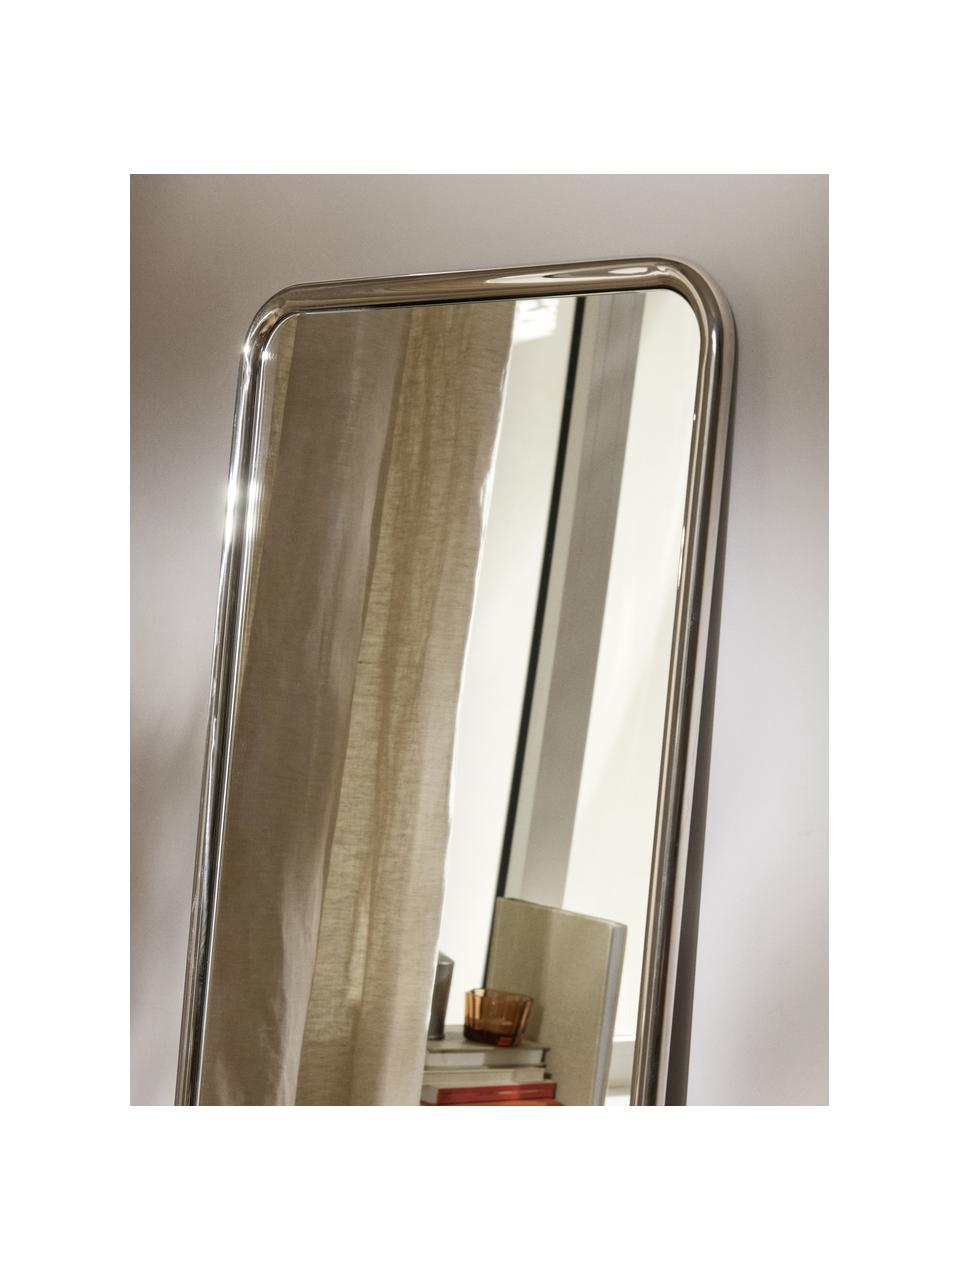 Eckiger Anlehnspiegel Blake, Rahmen: Edelstahl, Spiegelfläche: Spiegelglas, Rückseite: Mitteldichte Holzfaserpla, Silberfarben, B 55 x H 170 cm